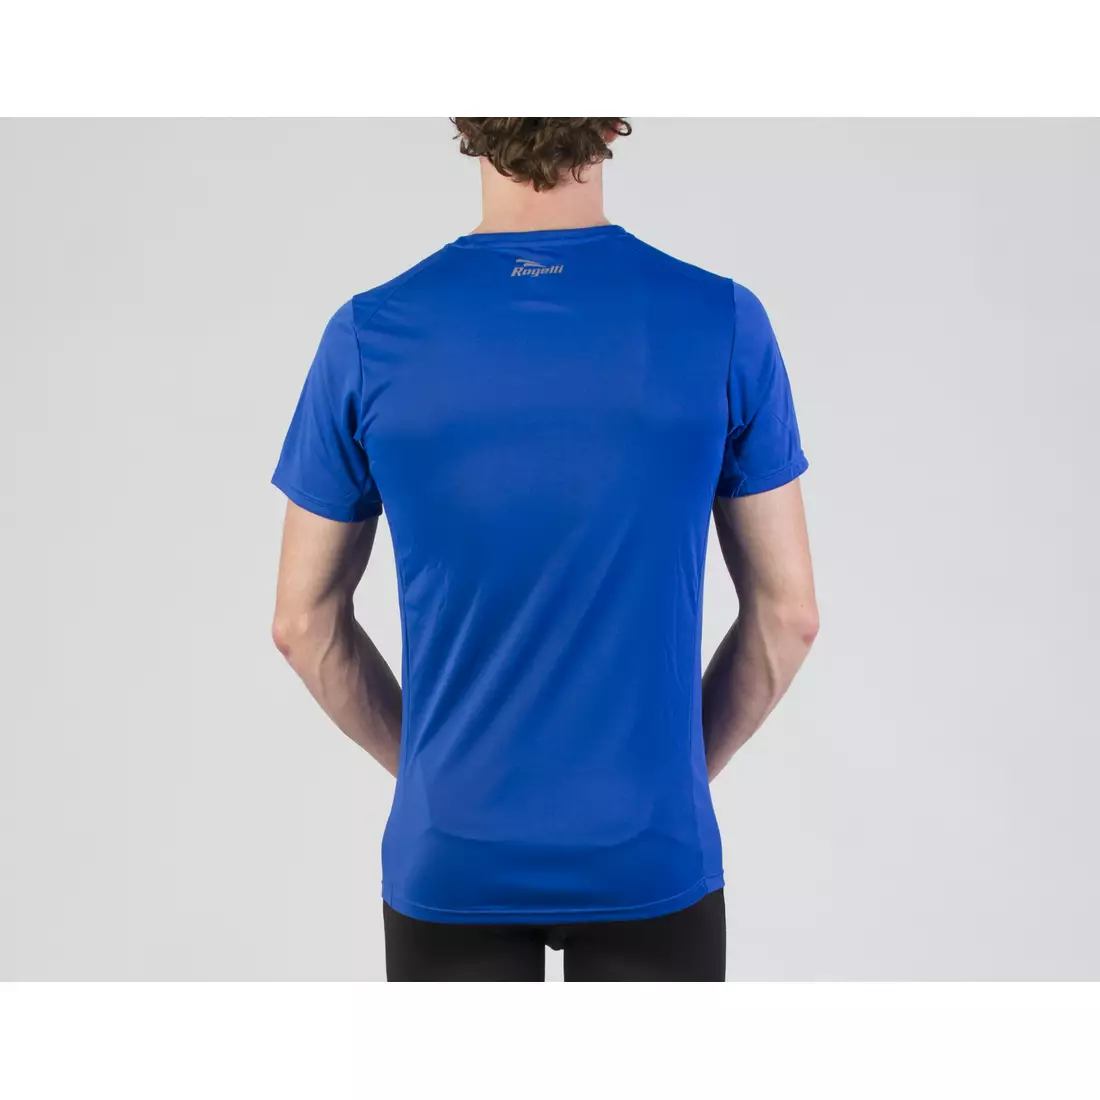 ROGELLI RUN BASIC - pánské běžecké tričko, 800.252 - modrý